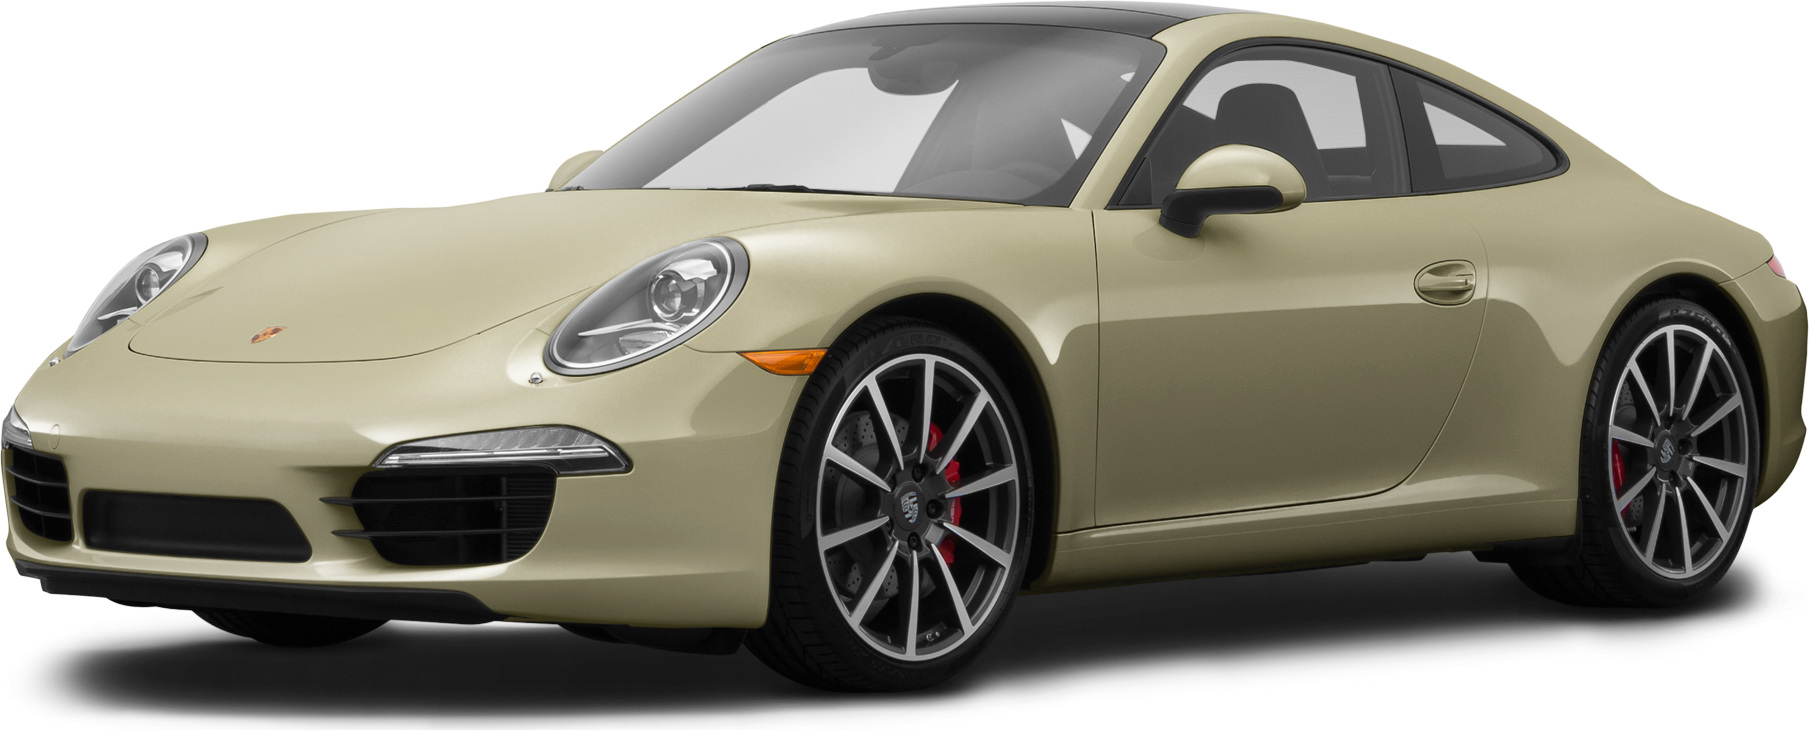 2016, Classic Cars, Porsche 911 & Ford Capri 2v